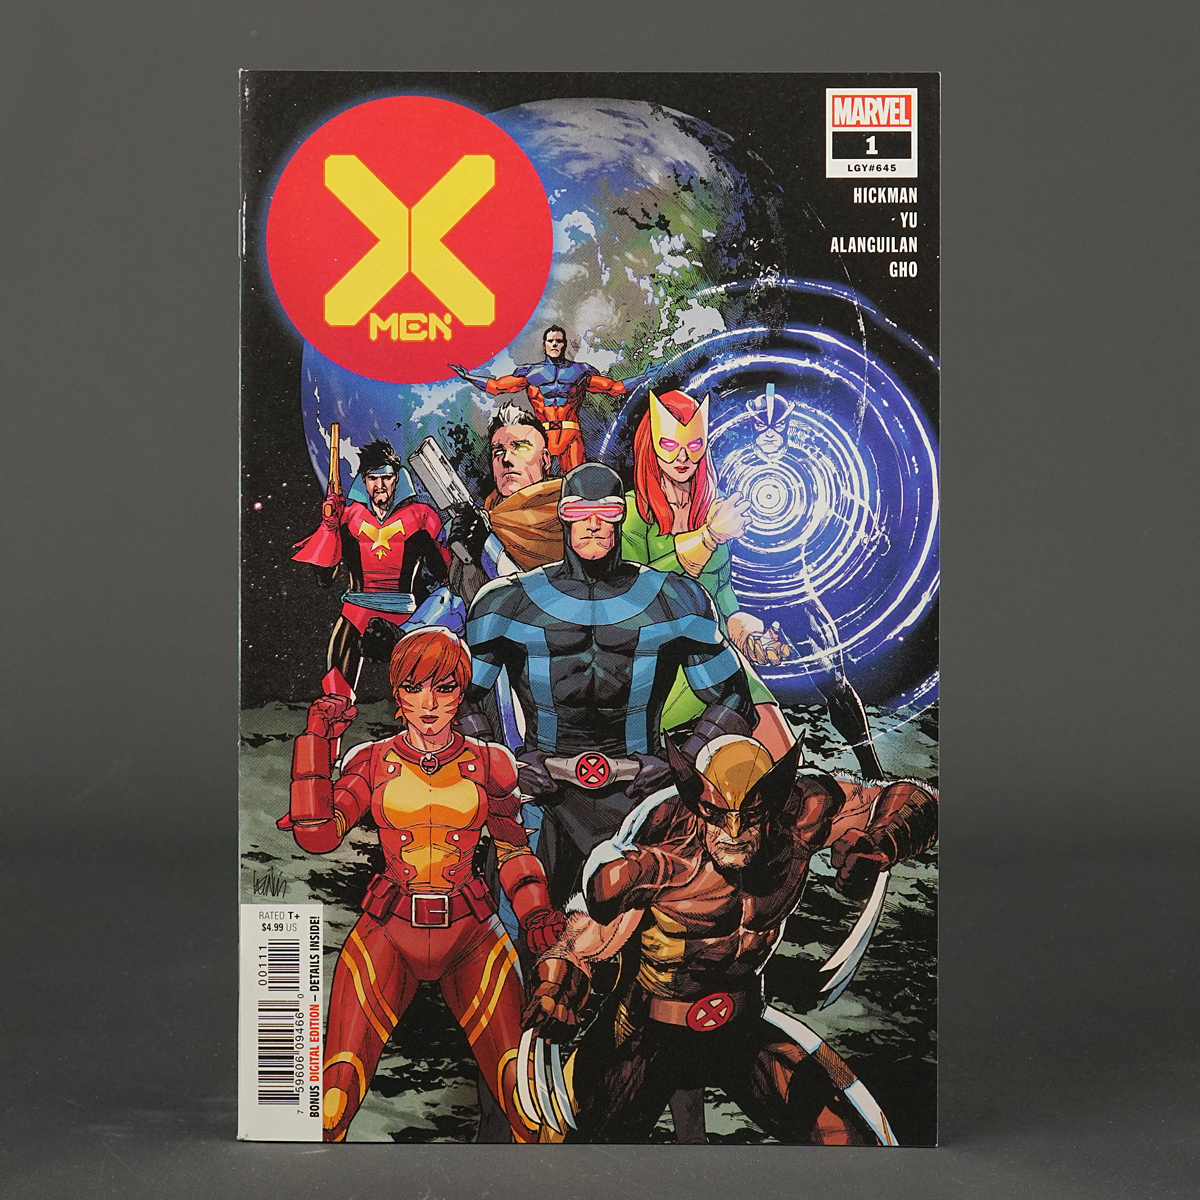 X-MEN #1 DX "Dawn of X" Vol 5 Marvel Comics 2019 AUG190845 (CA) Yu 221206A